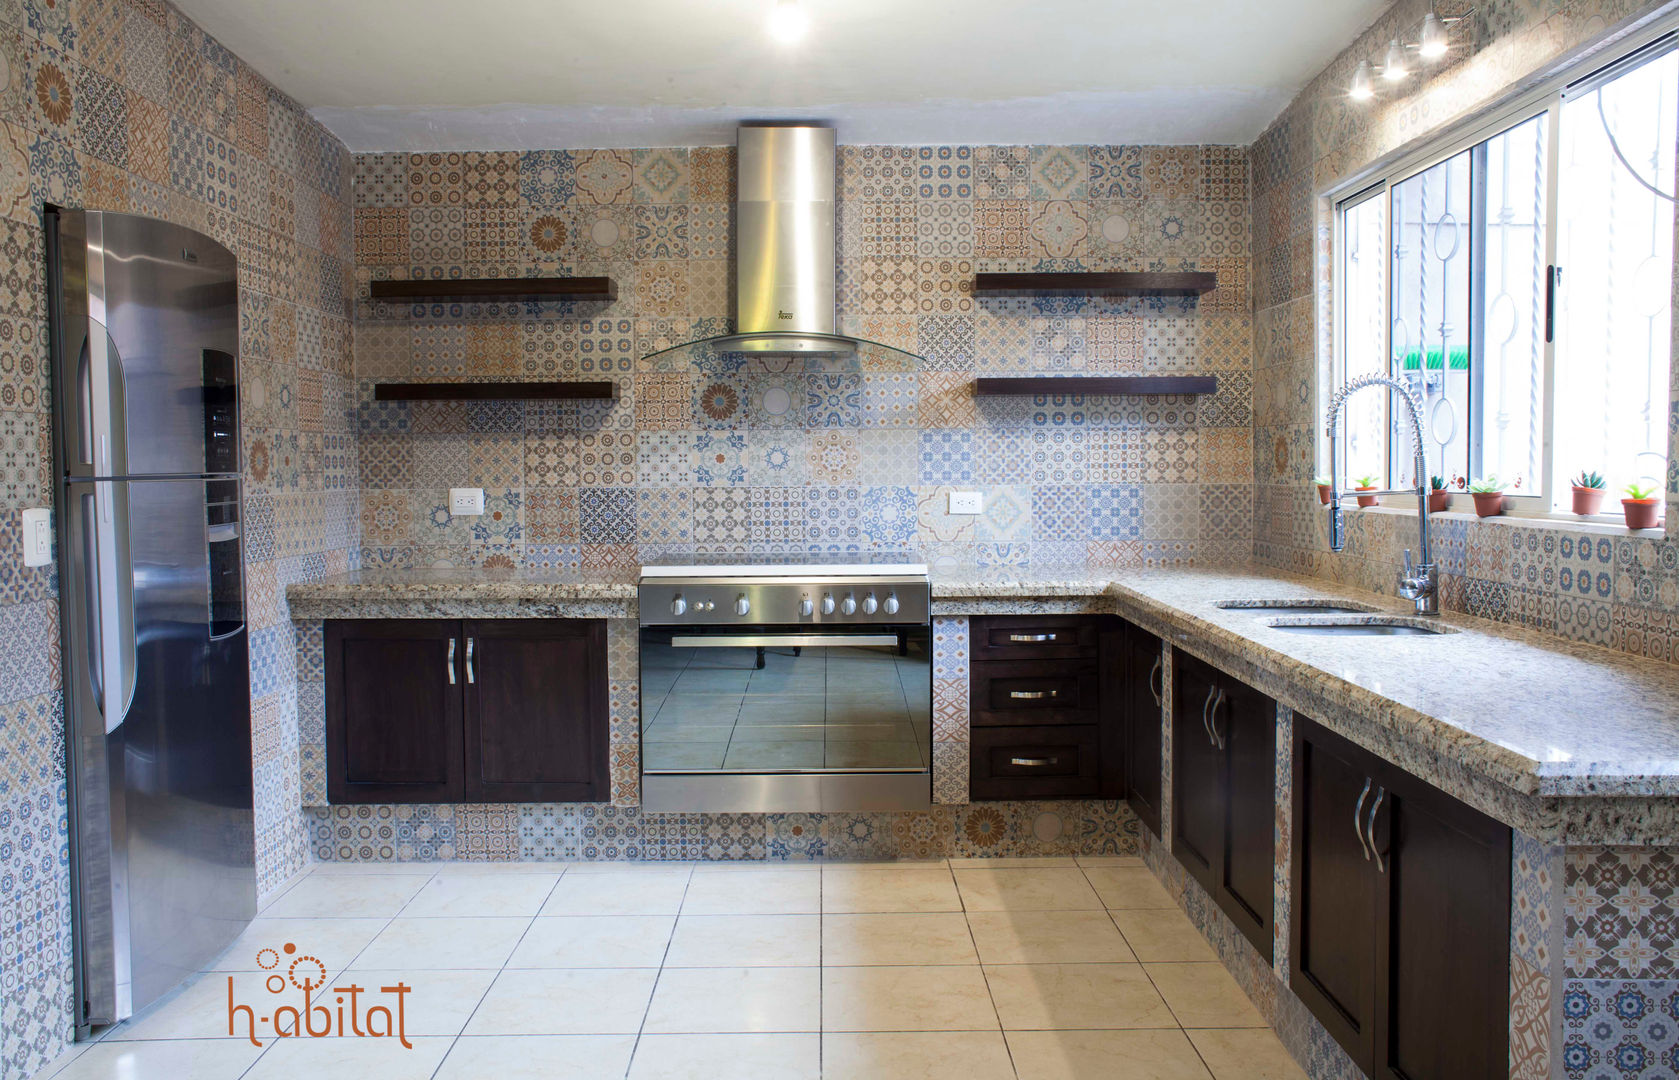 Cocina Moderna con azulejo Vintage, H-abitat Diseño & Interiores H-abitat Diseño & Interiores Cozinhas ecléticas Azulejo